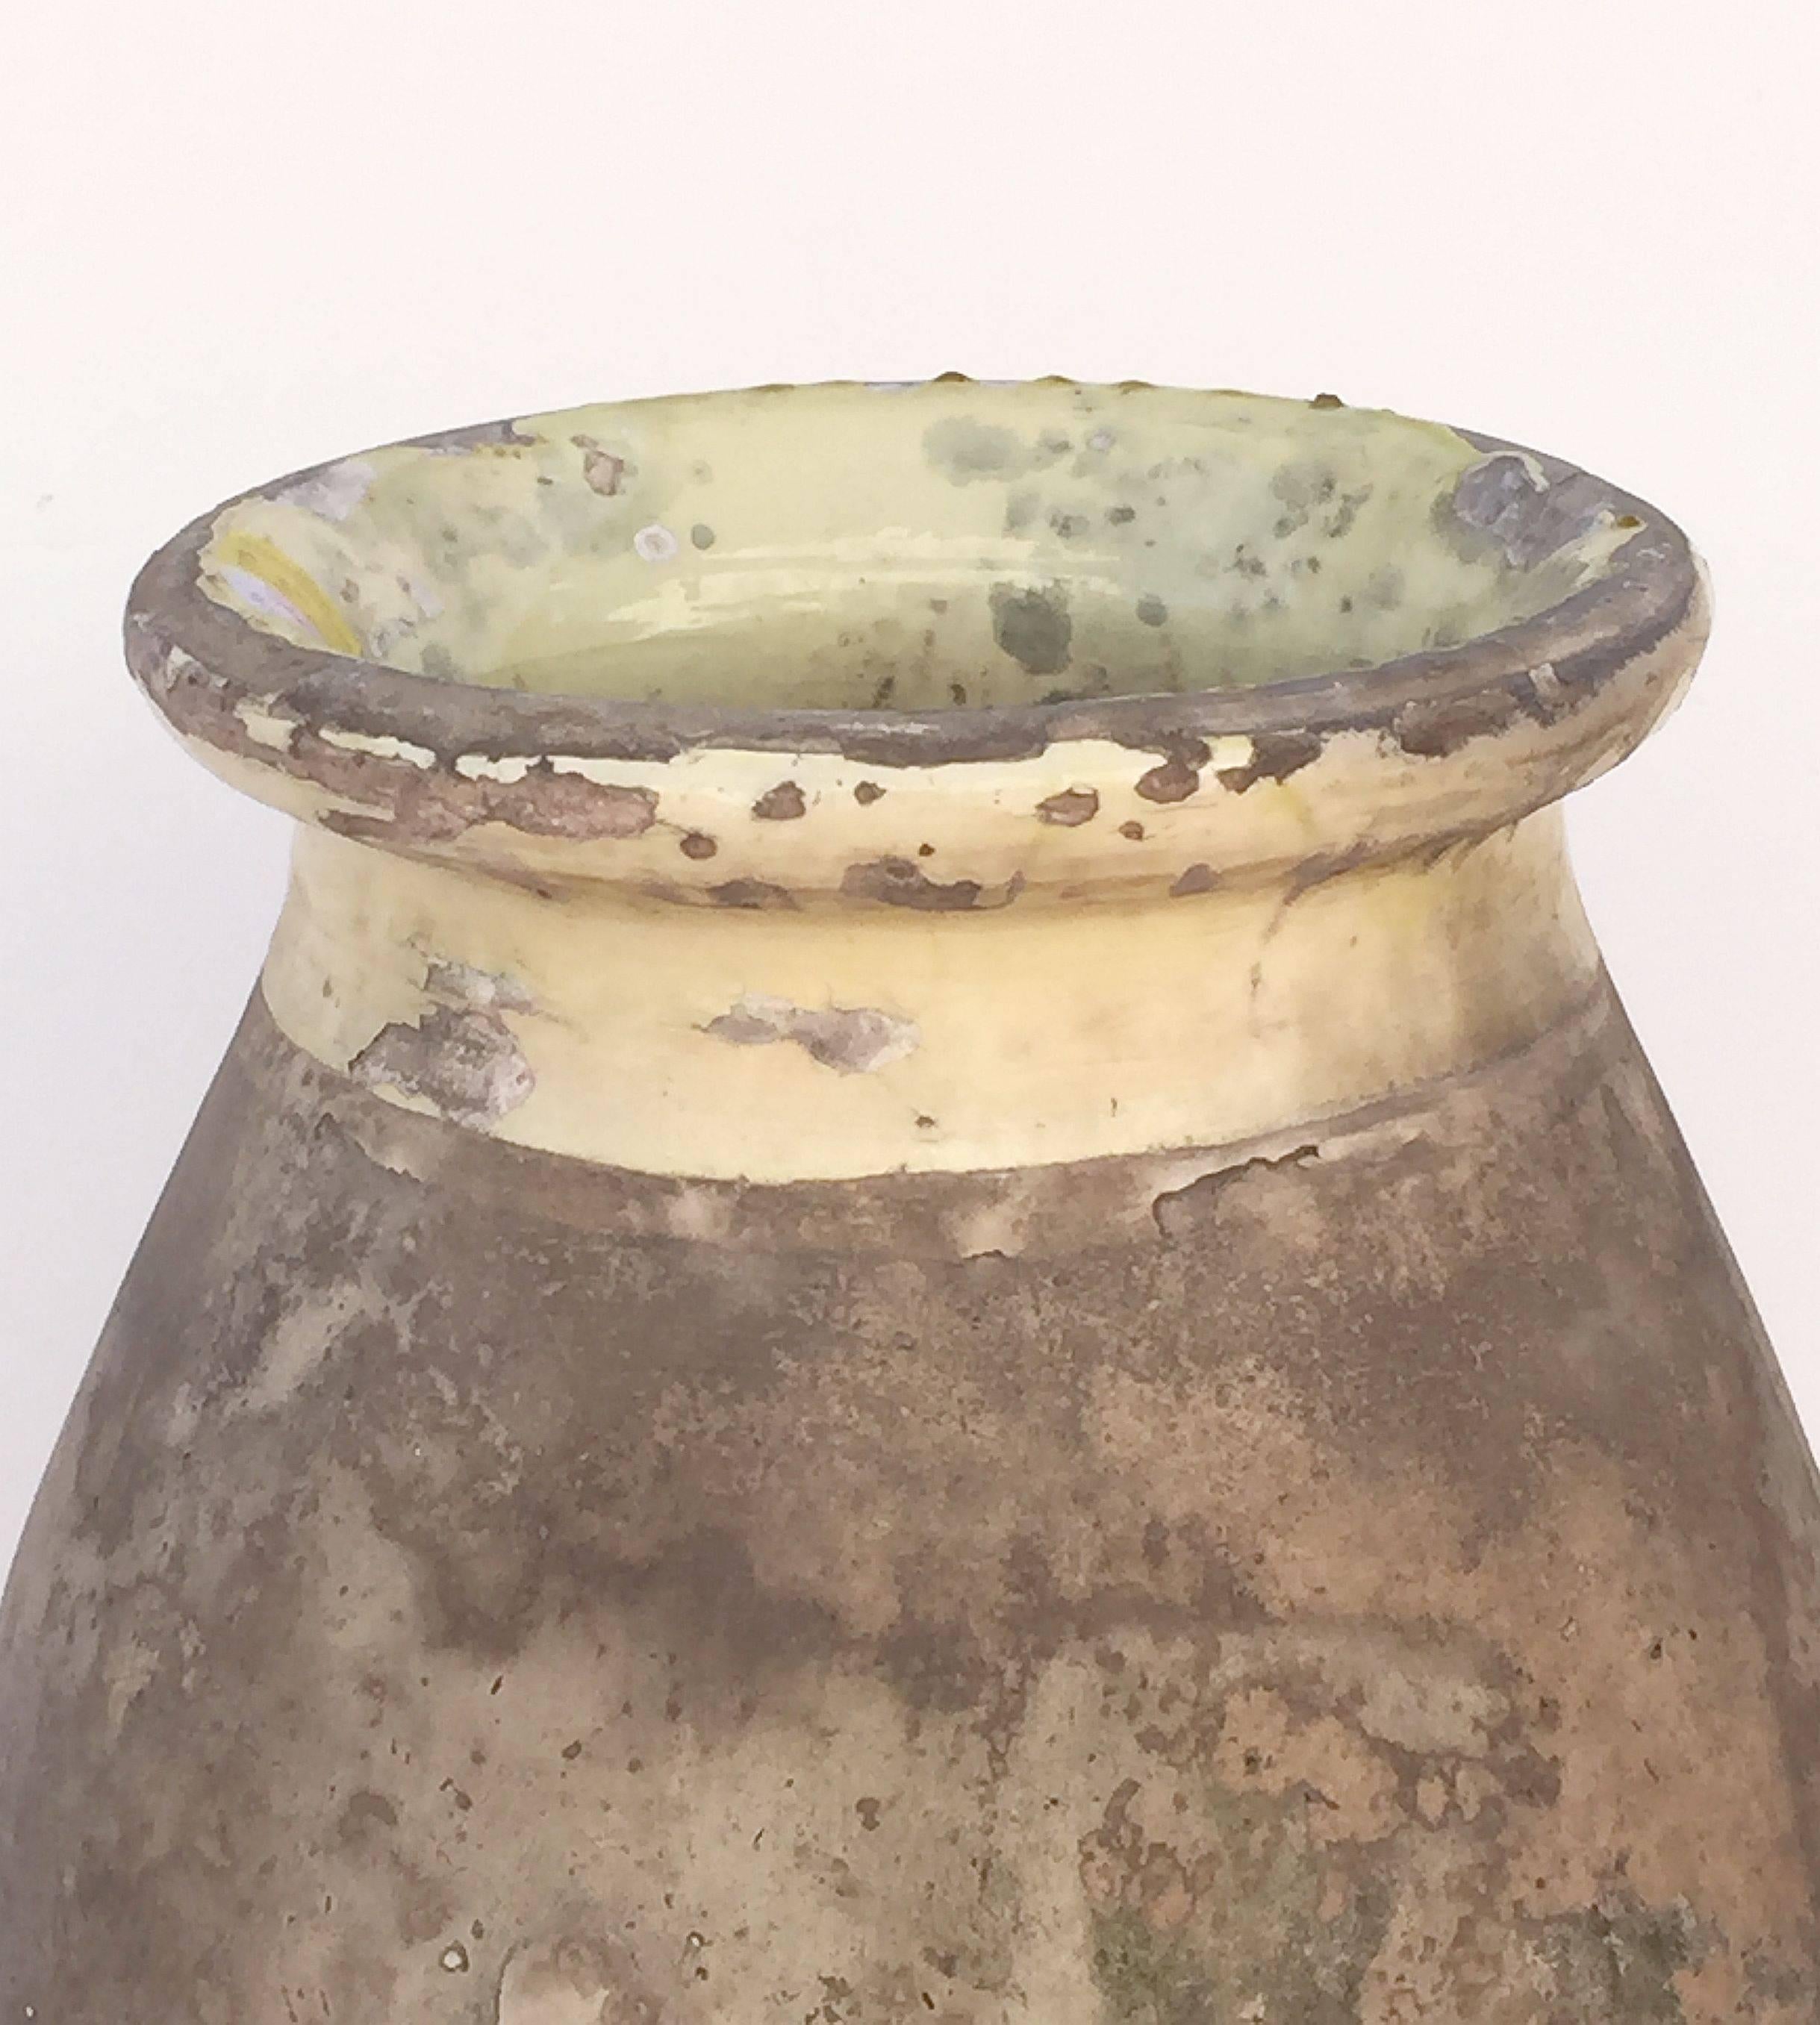 Glazed Large Biot Garden Urn or Oil Jar from France